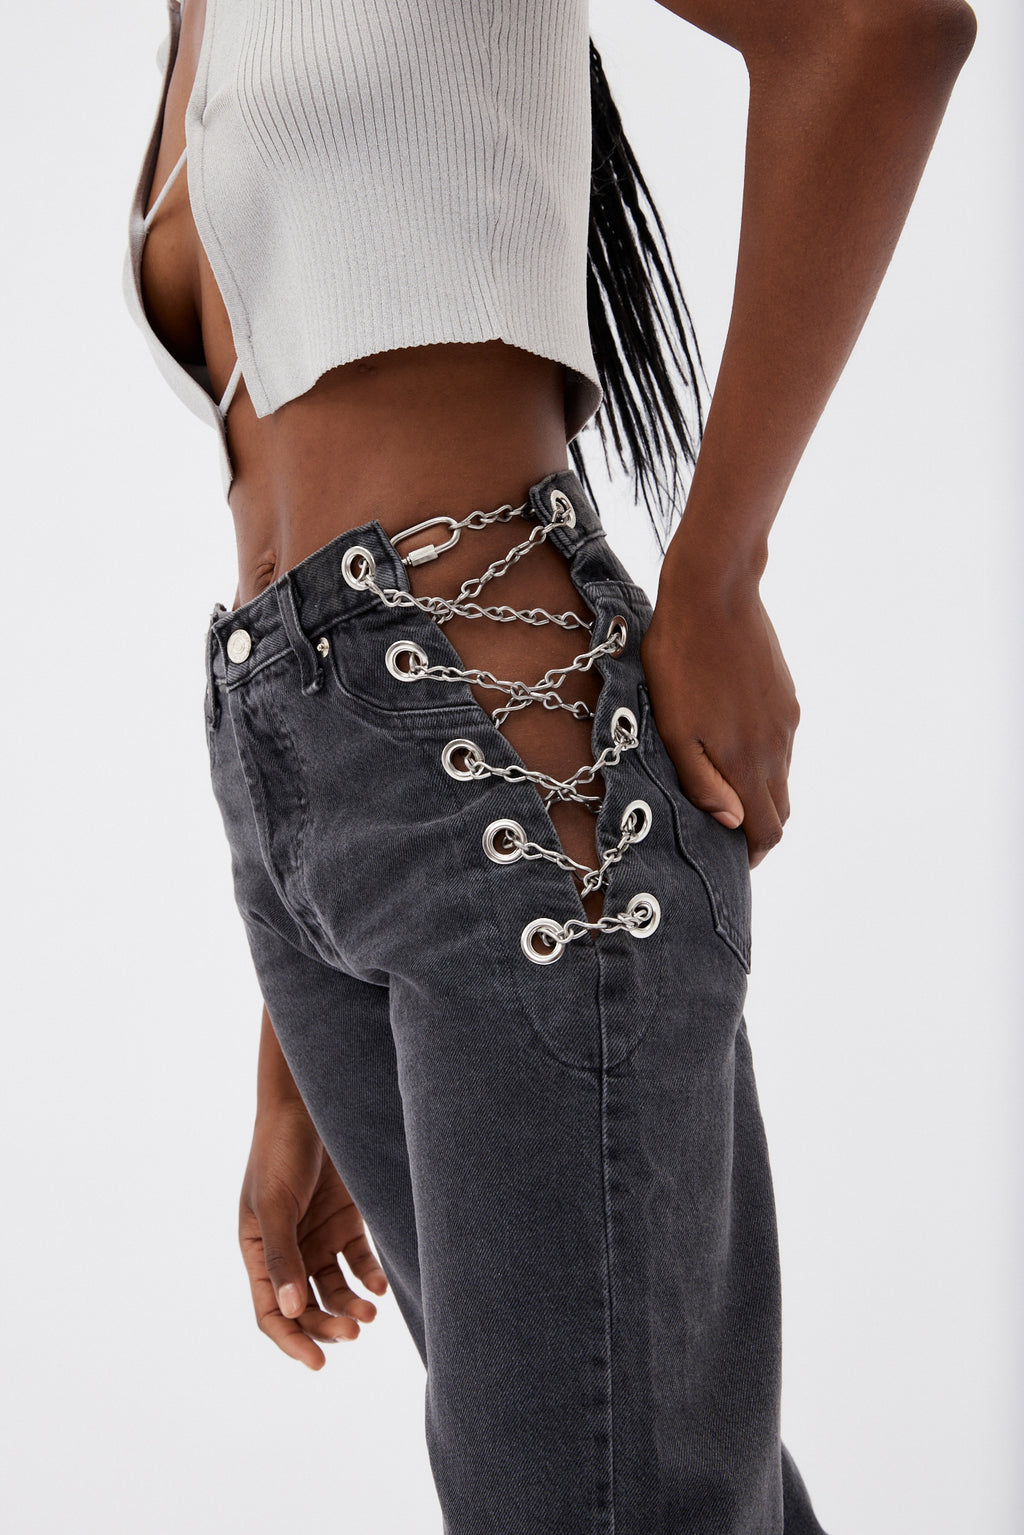 Chain Replica Grade School Jeans